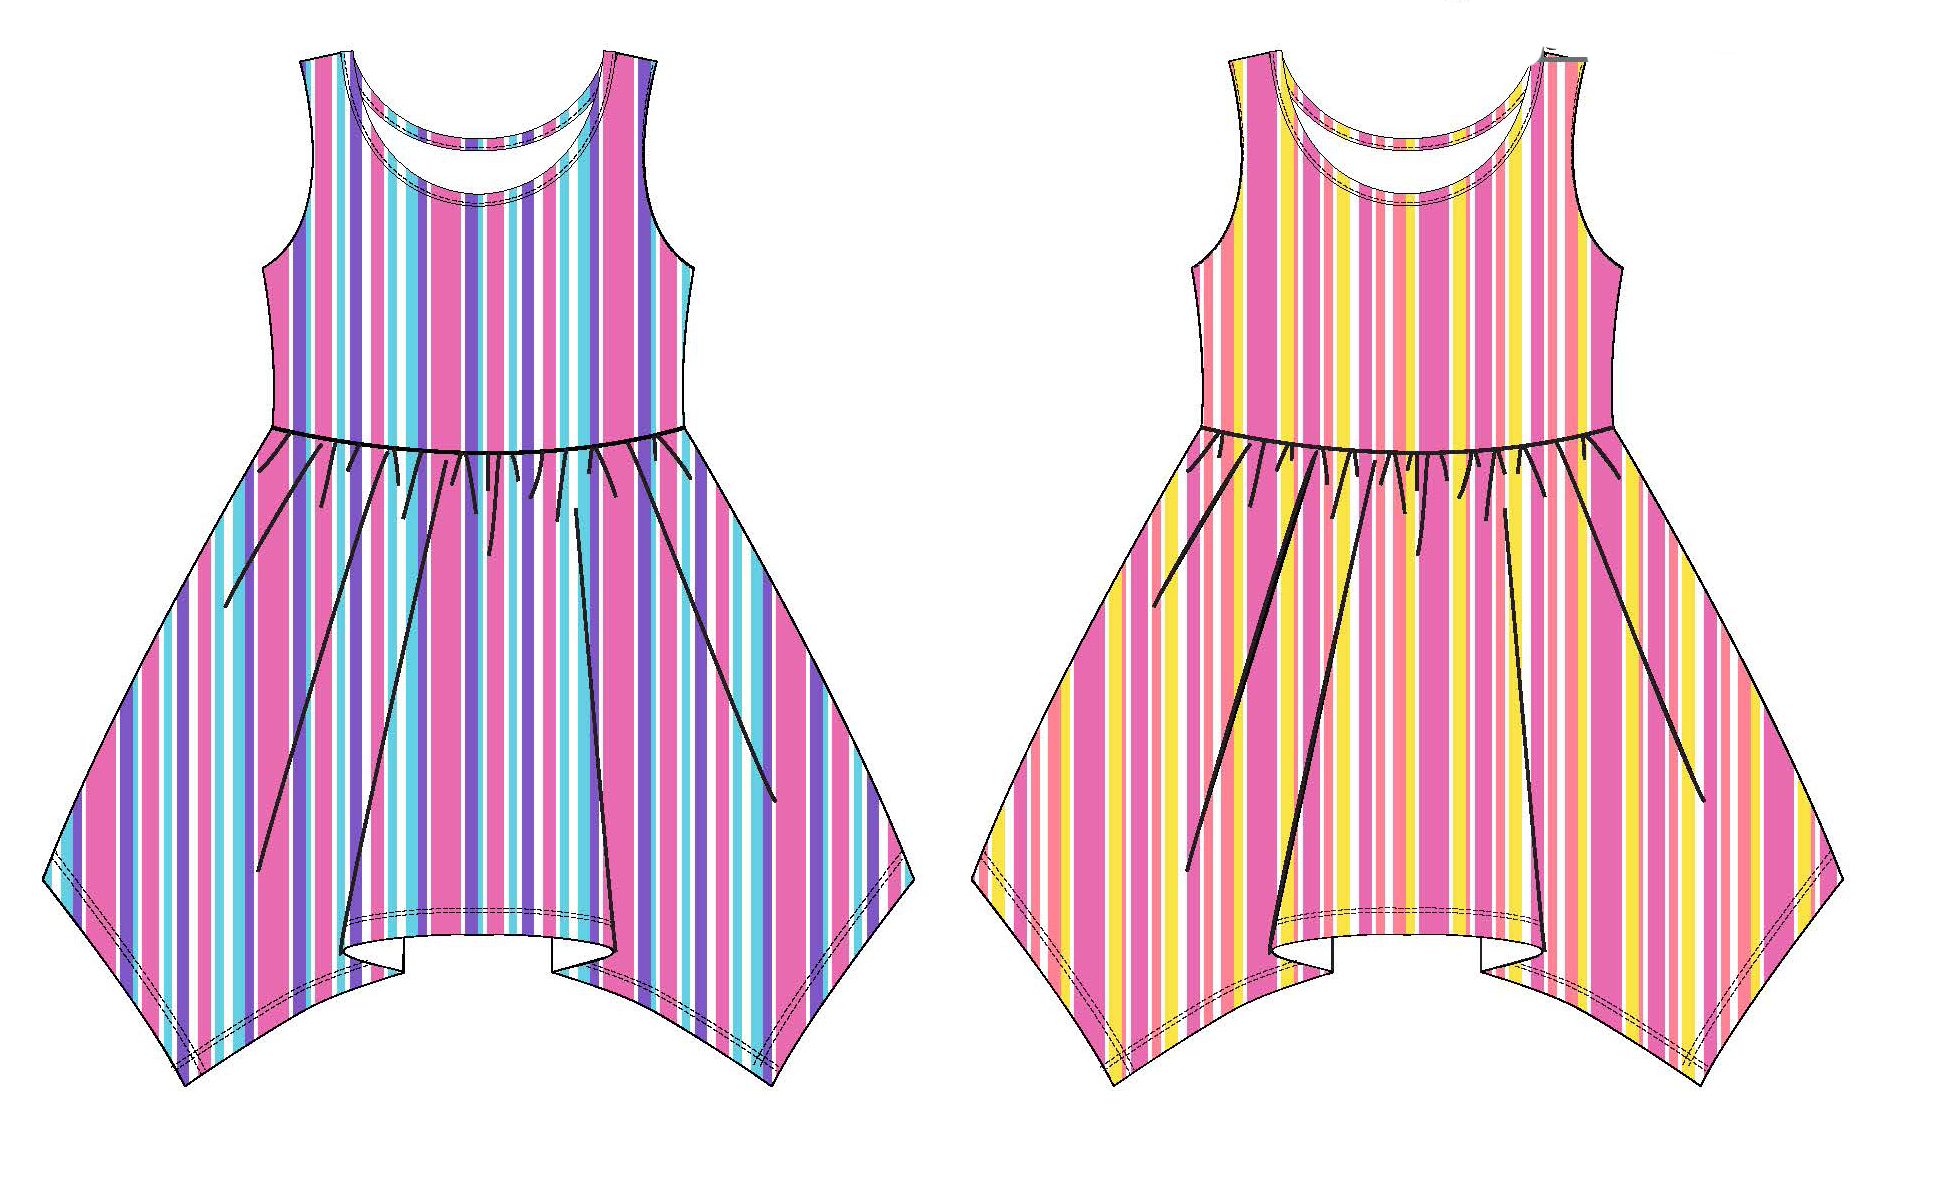 Girl's Sleeveless Knit Shirtwaist DRESS w/ Two Tone Stripes - Size 4-6X